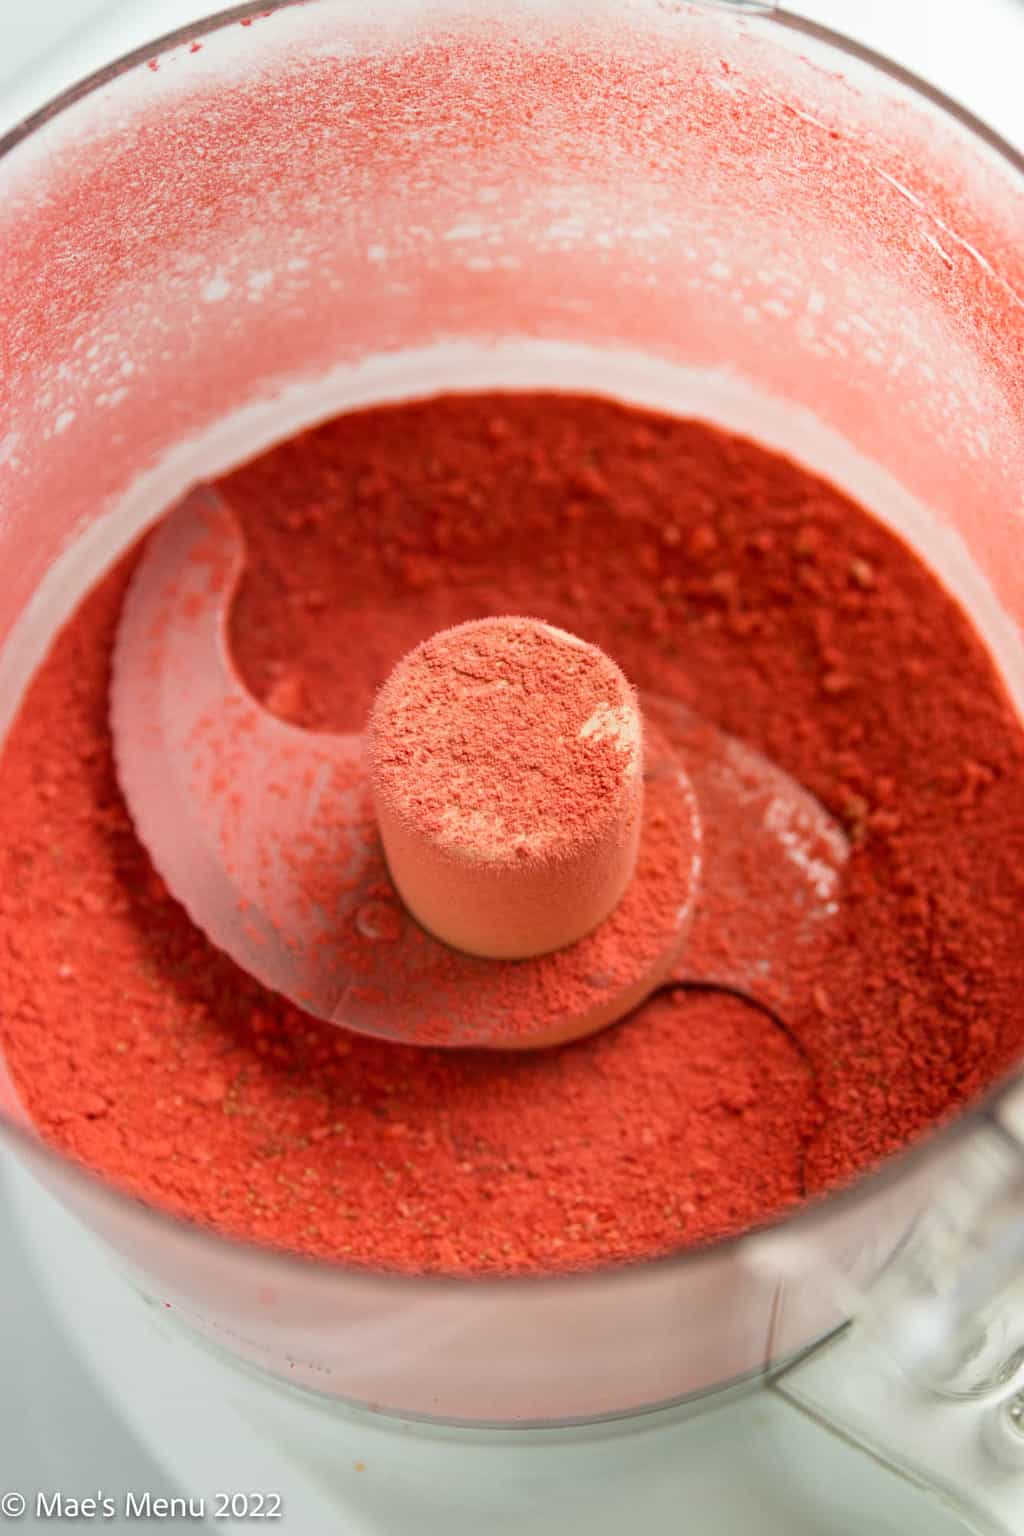 Strawberry powder in a food processor.